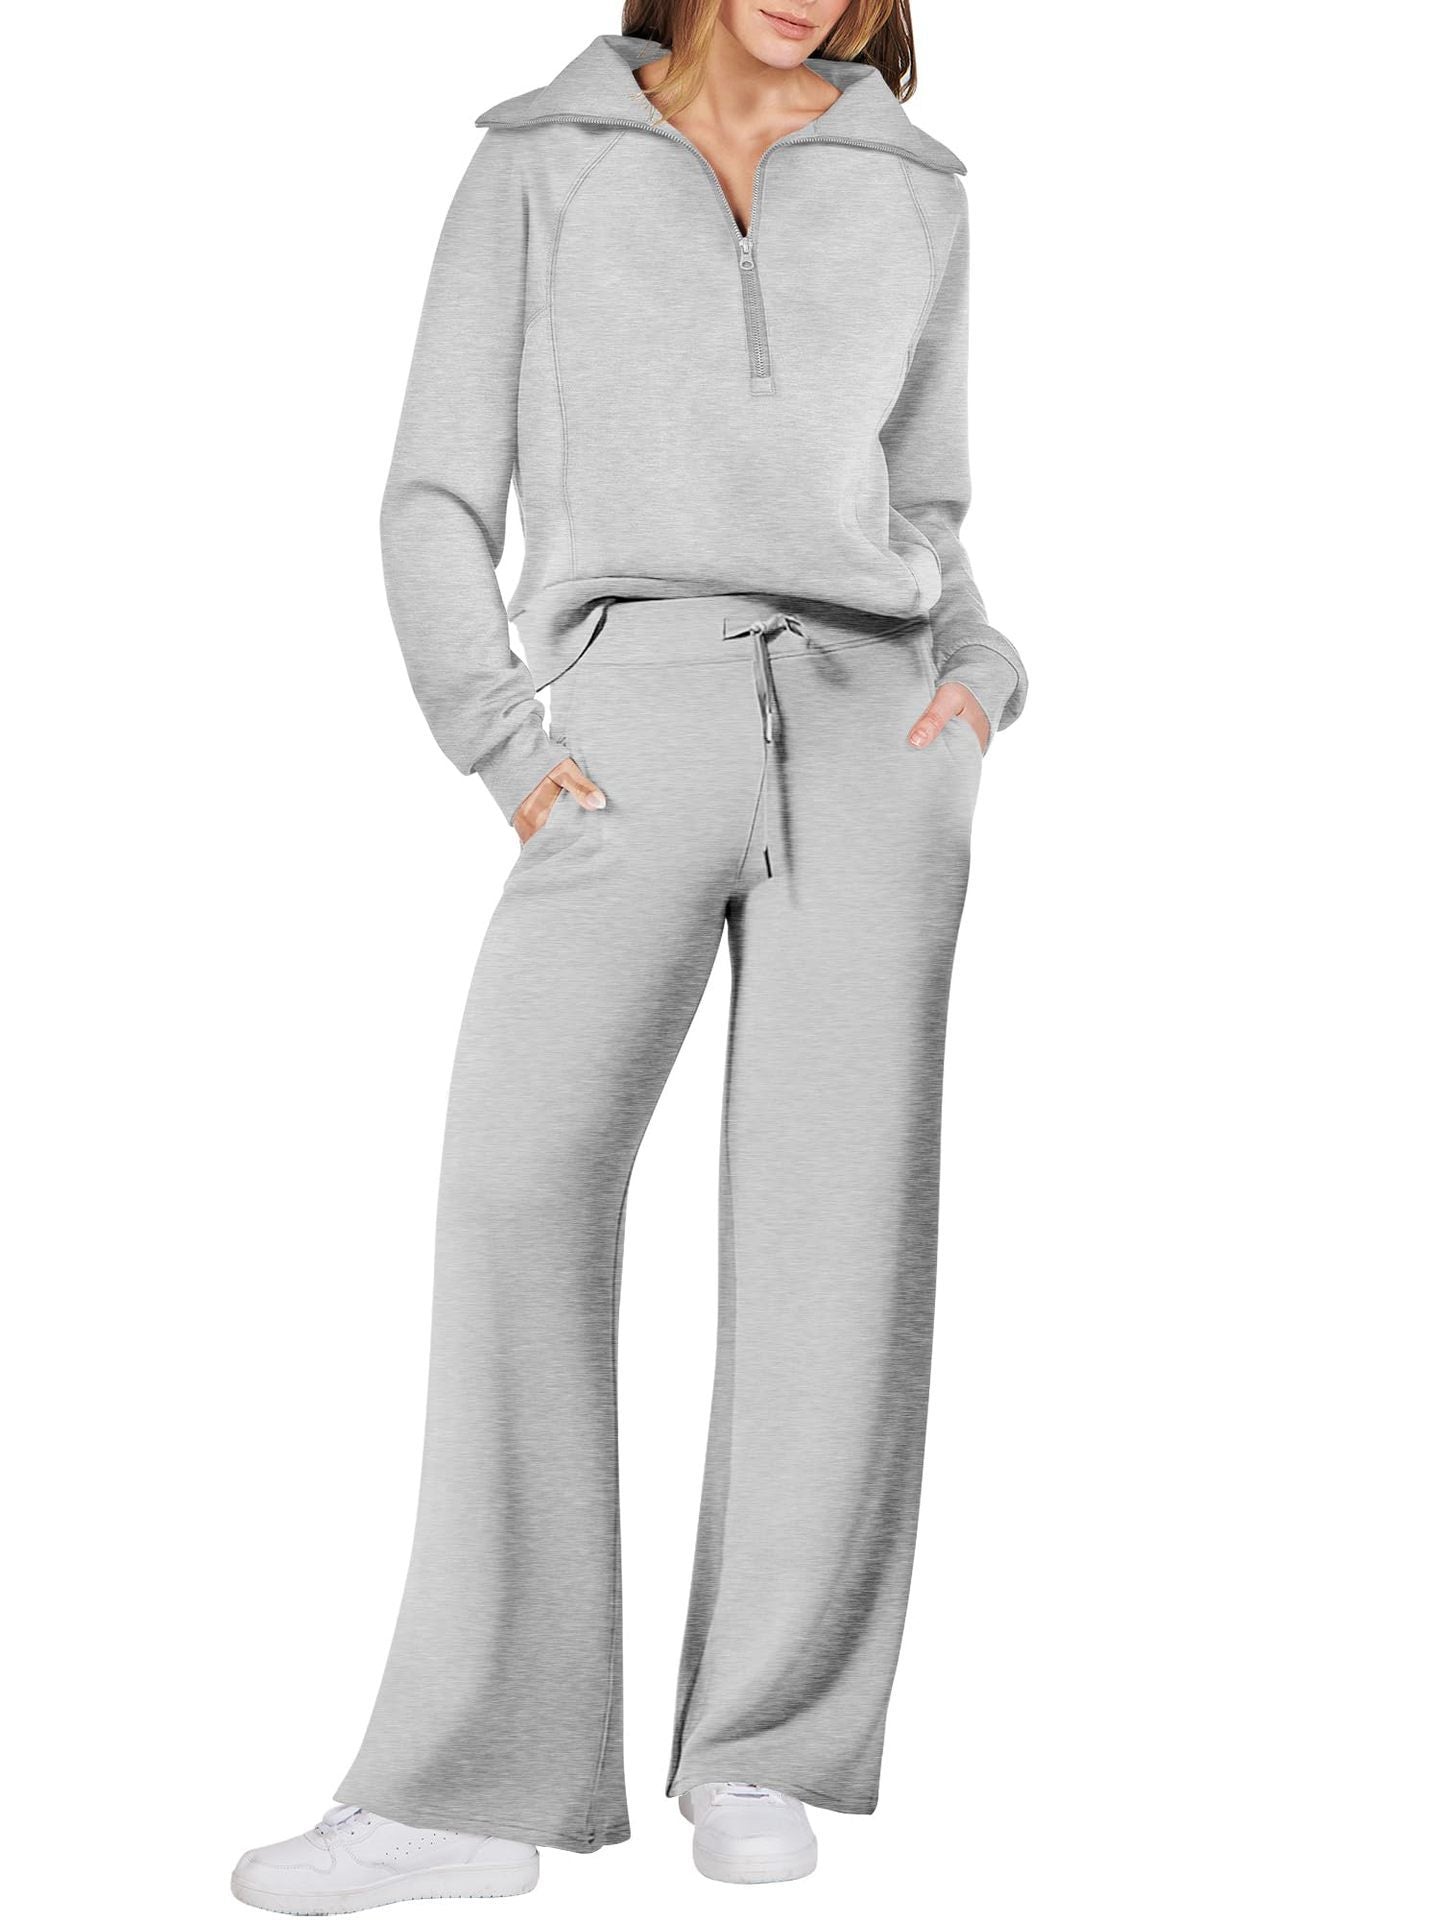 Leisure Sports Suit Long-sleeve Zipper Sweatshirt Wide Leg Pants Two-piece Set